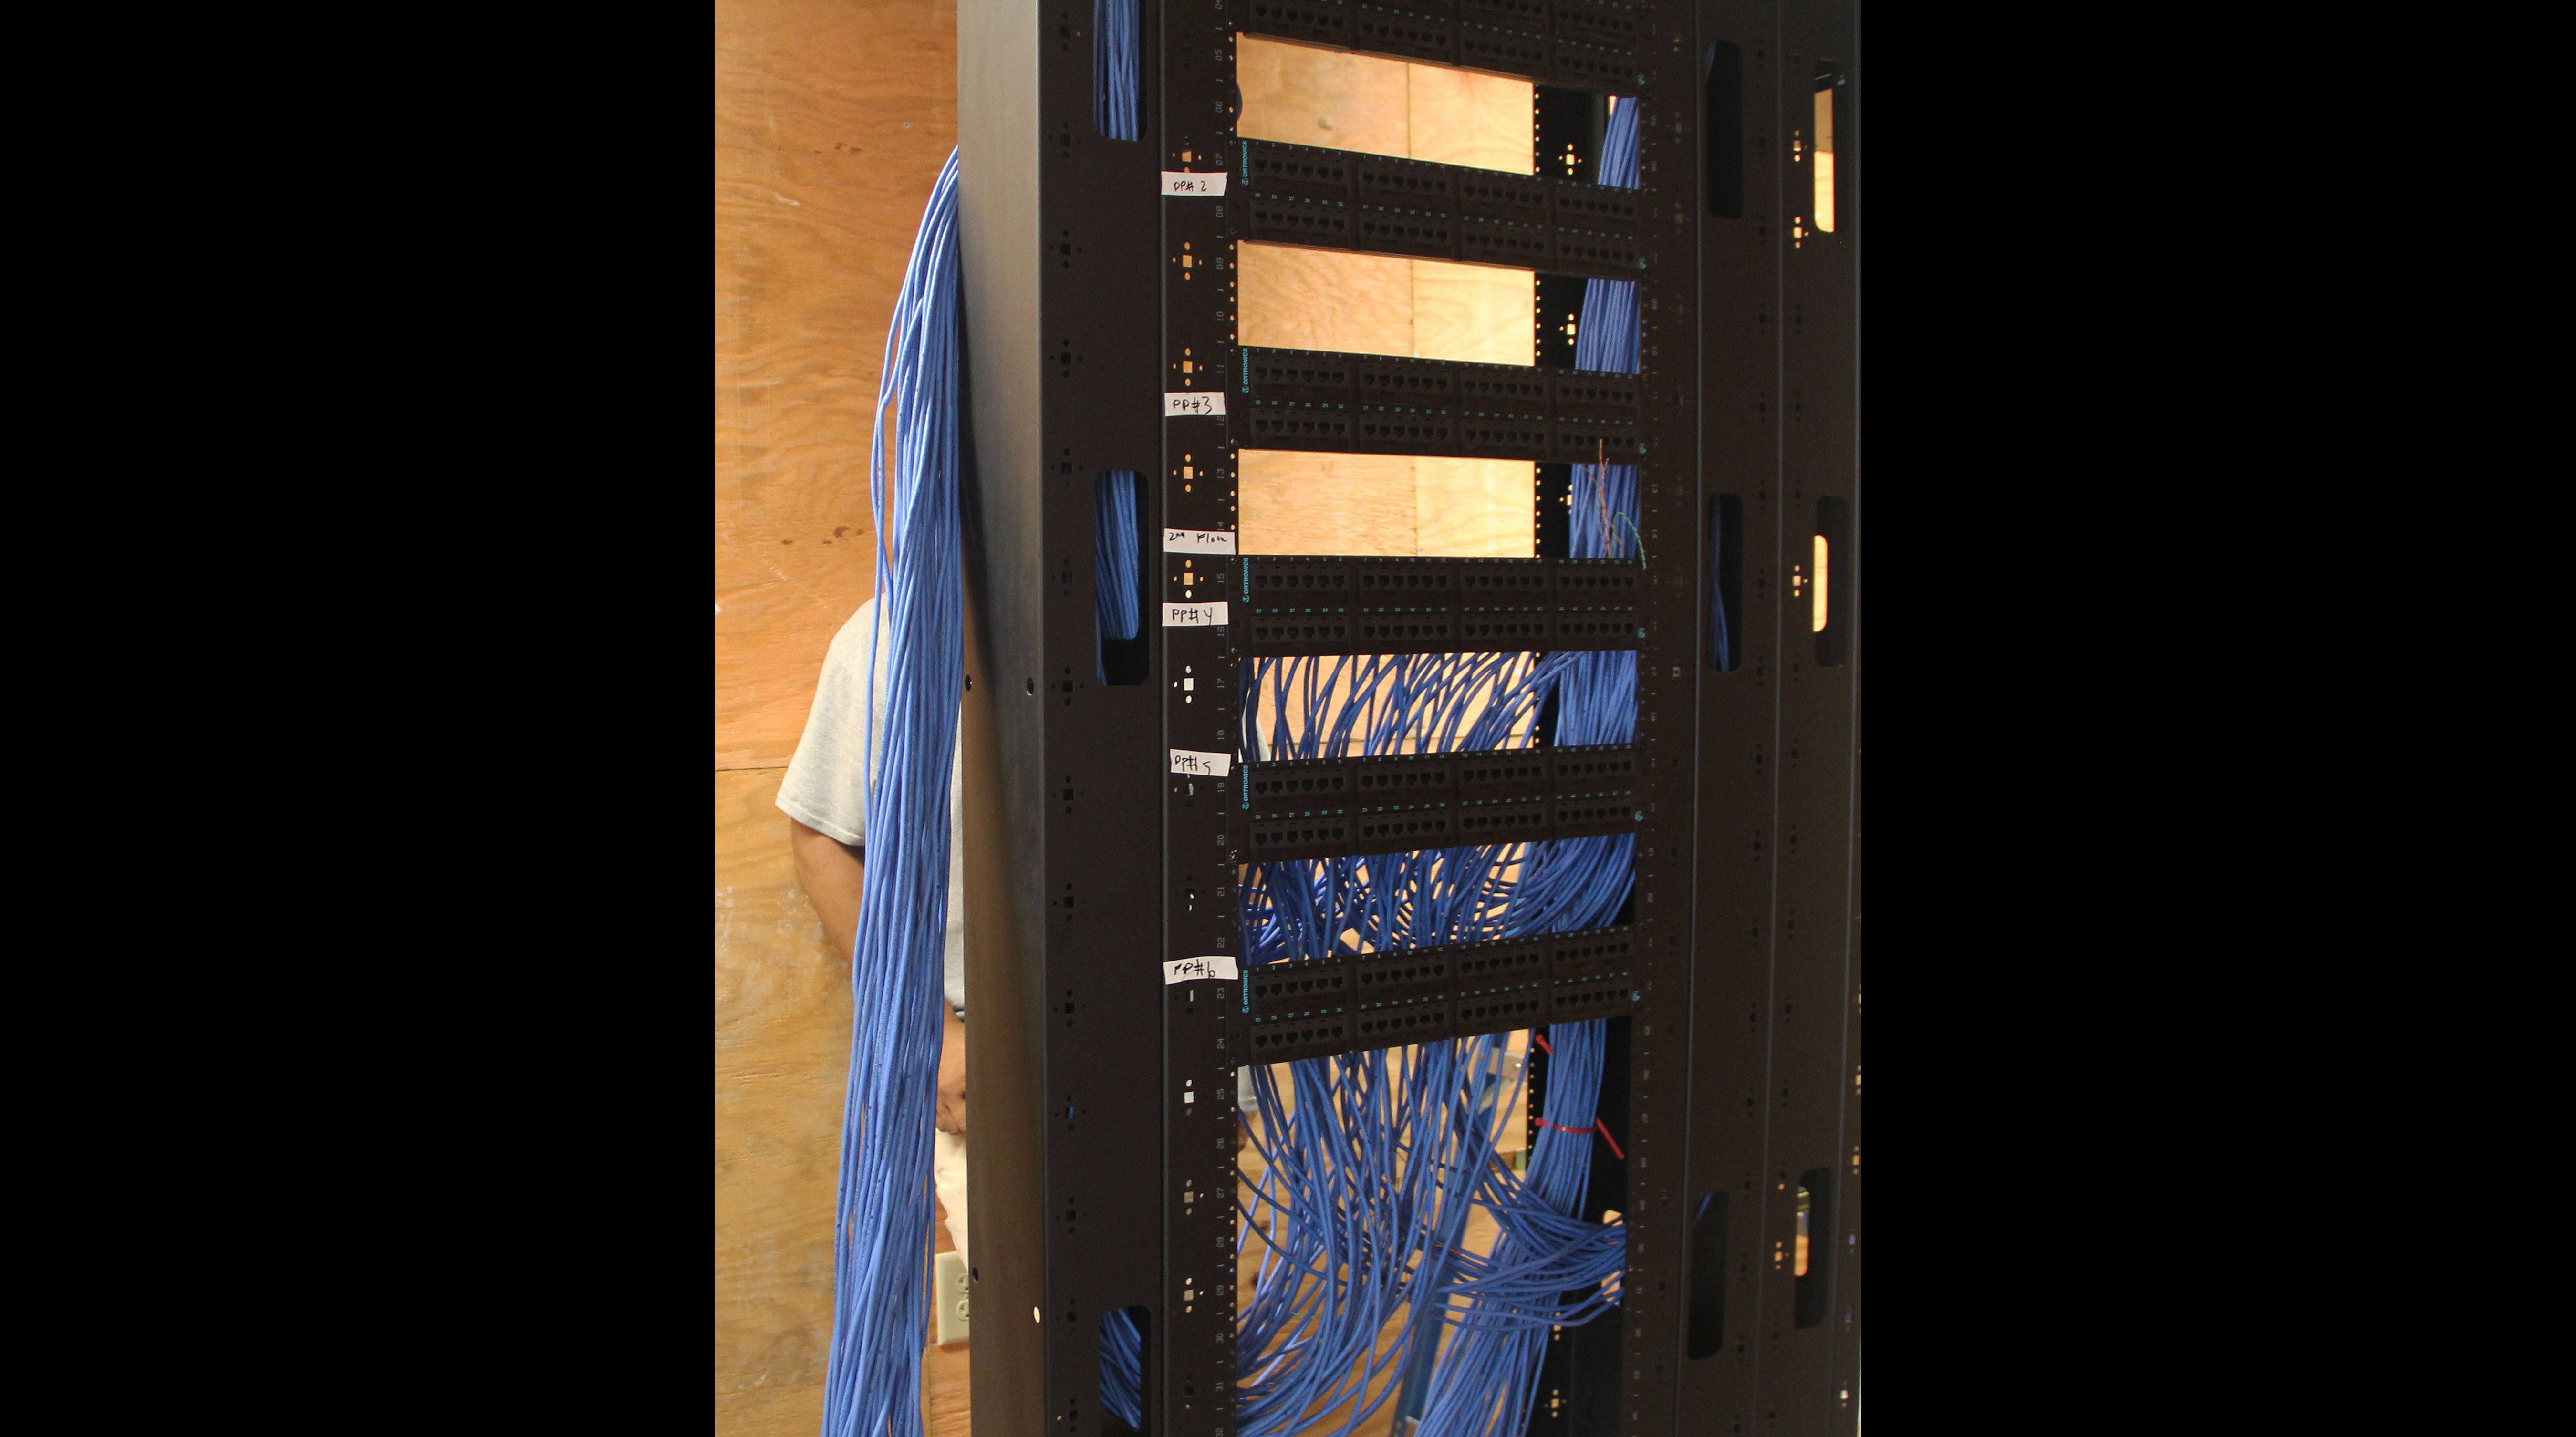 Assembling Server Racks 